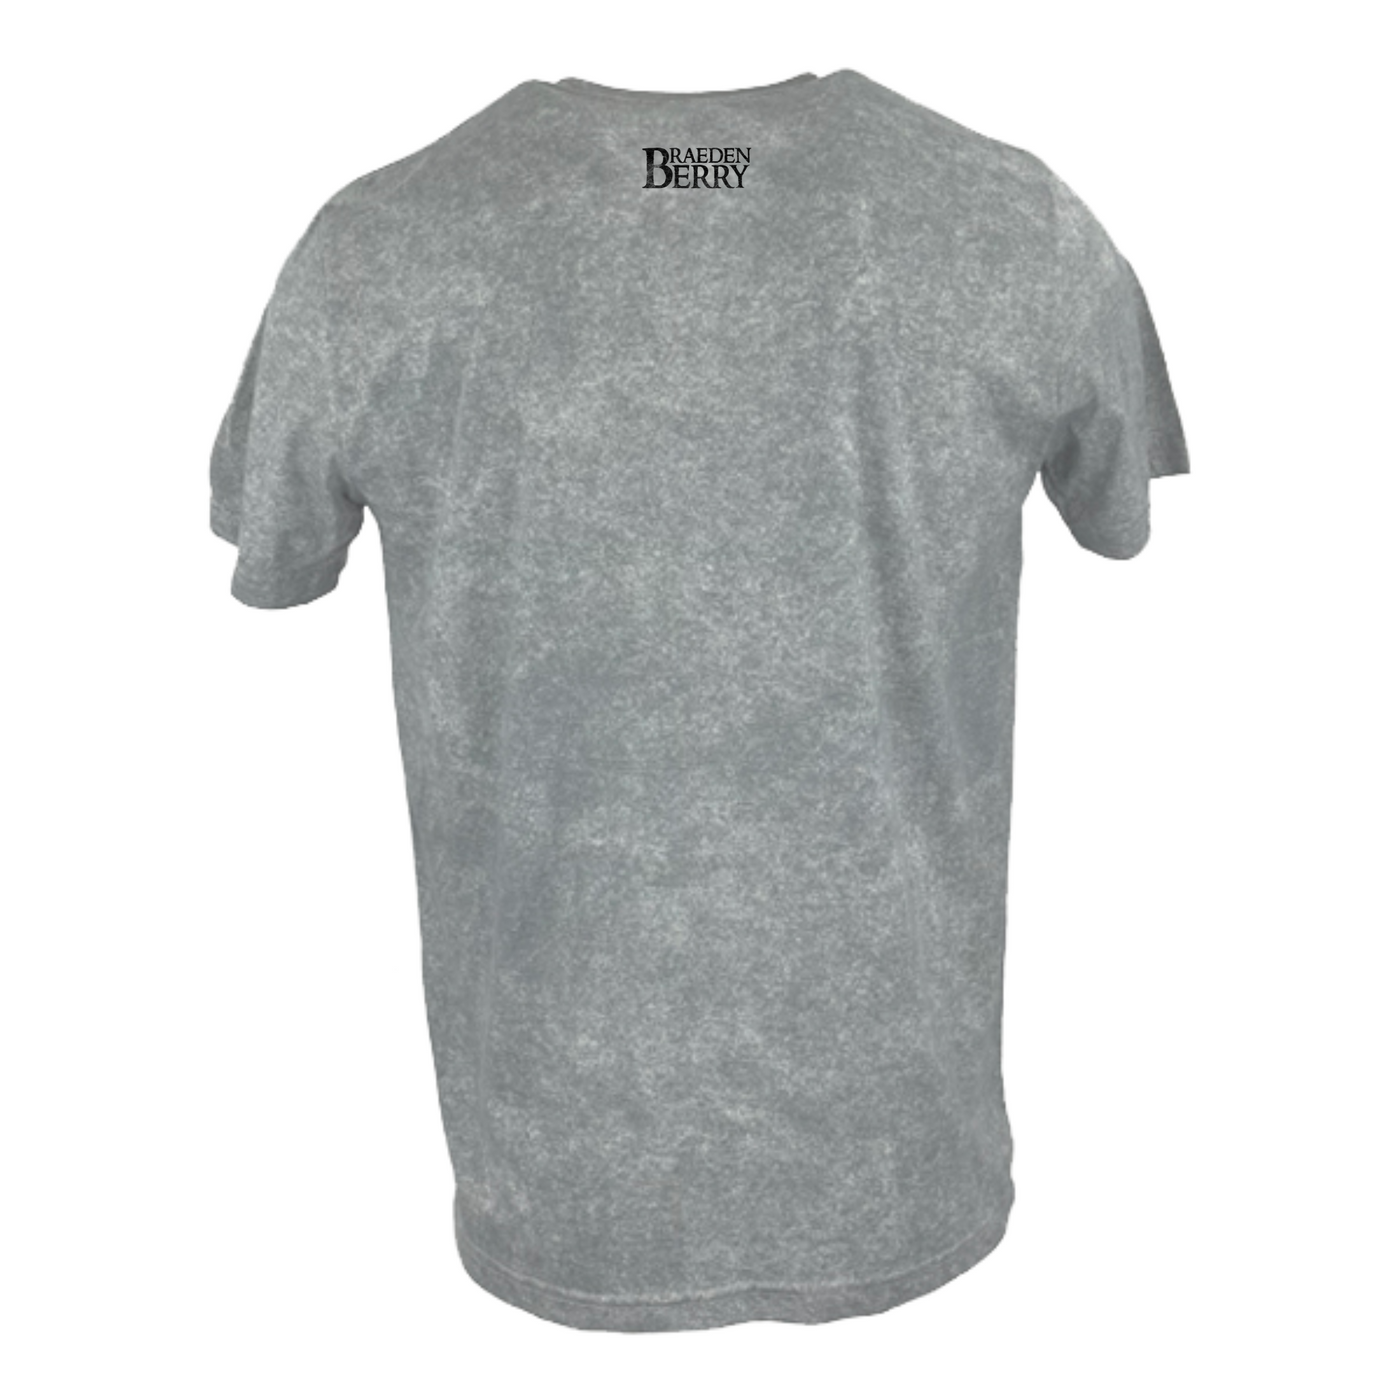 Braeden Berry - Logo T-Shirt: Vintage Grey